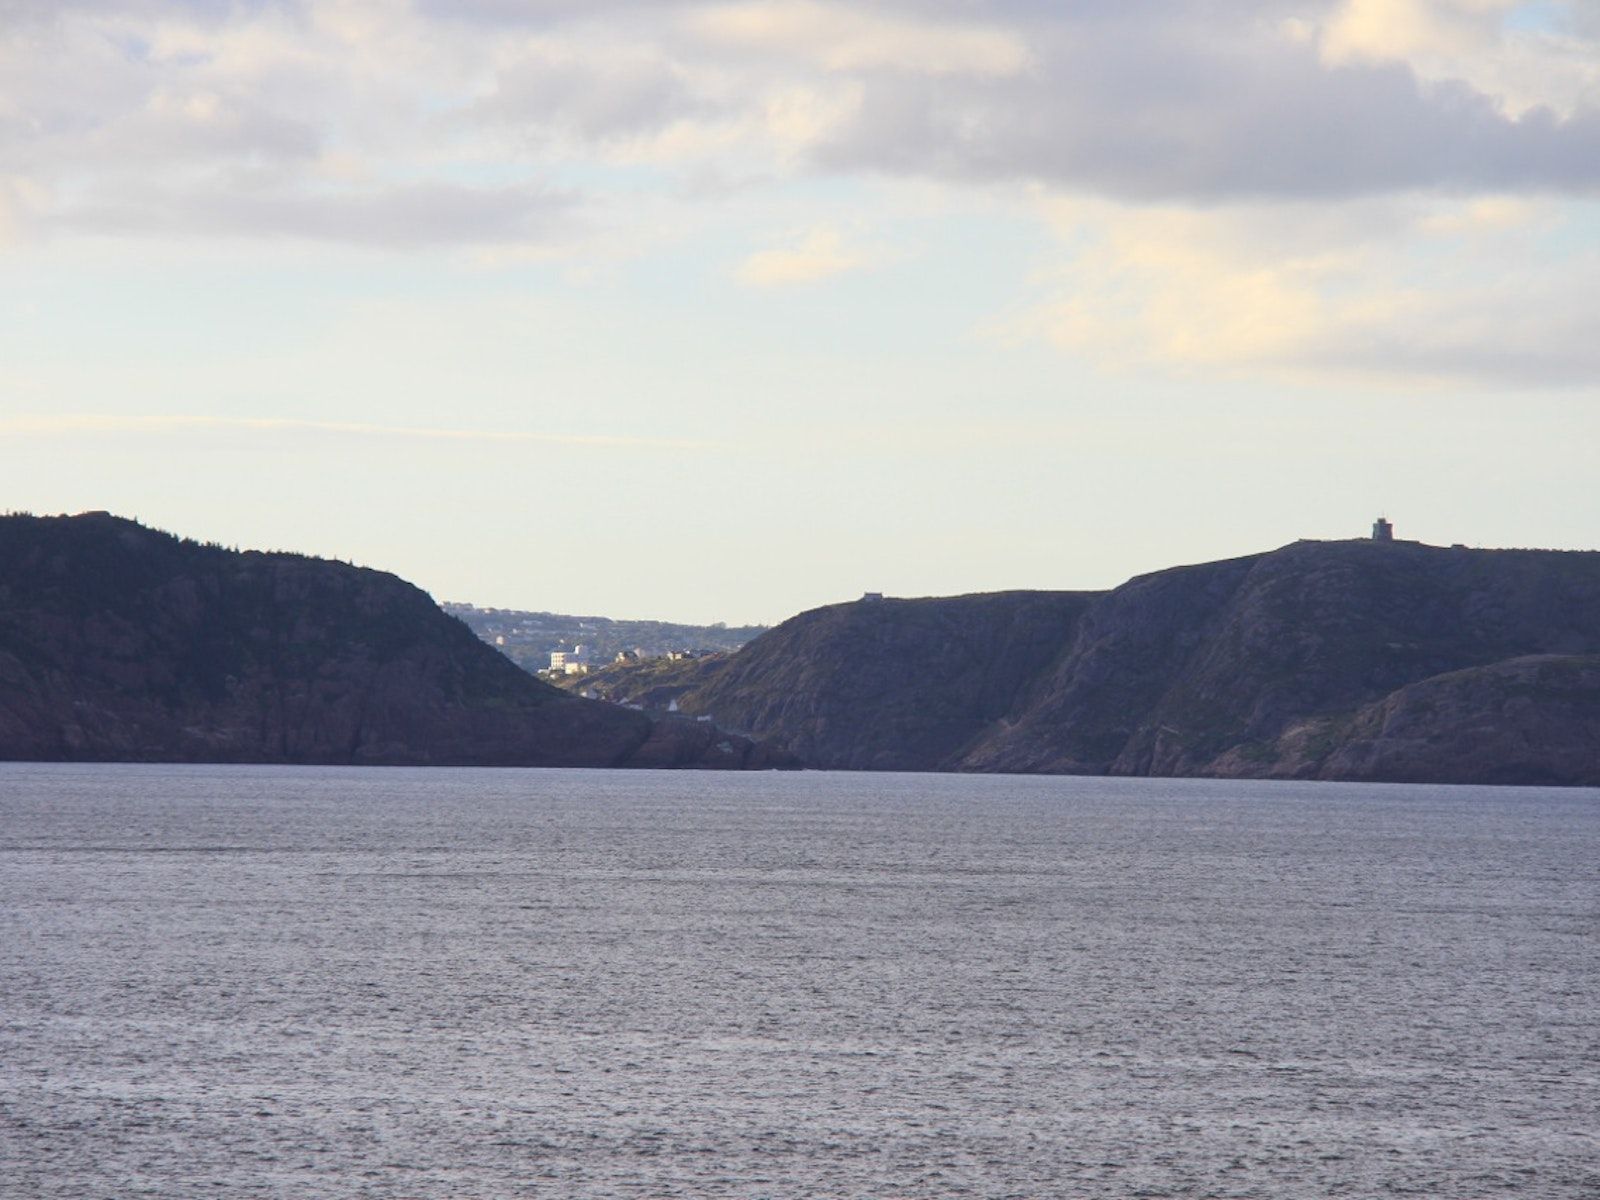 Embouchure du port de Saint John à Terre-Neuve vue du port depuis l'océan